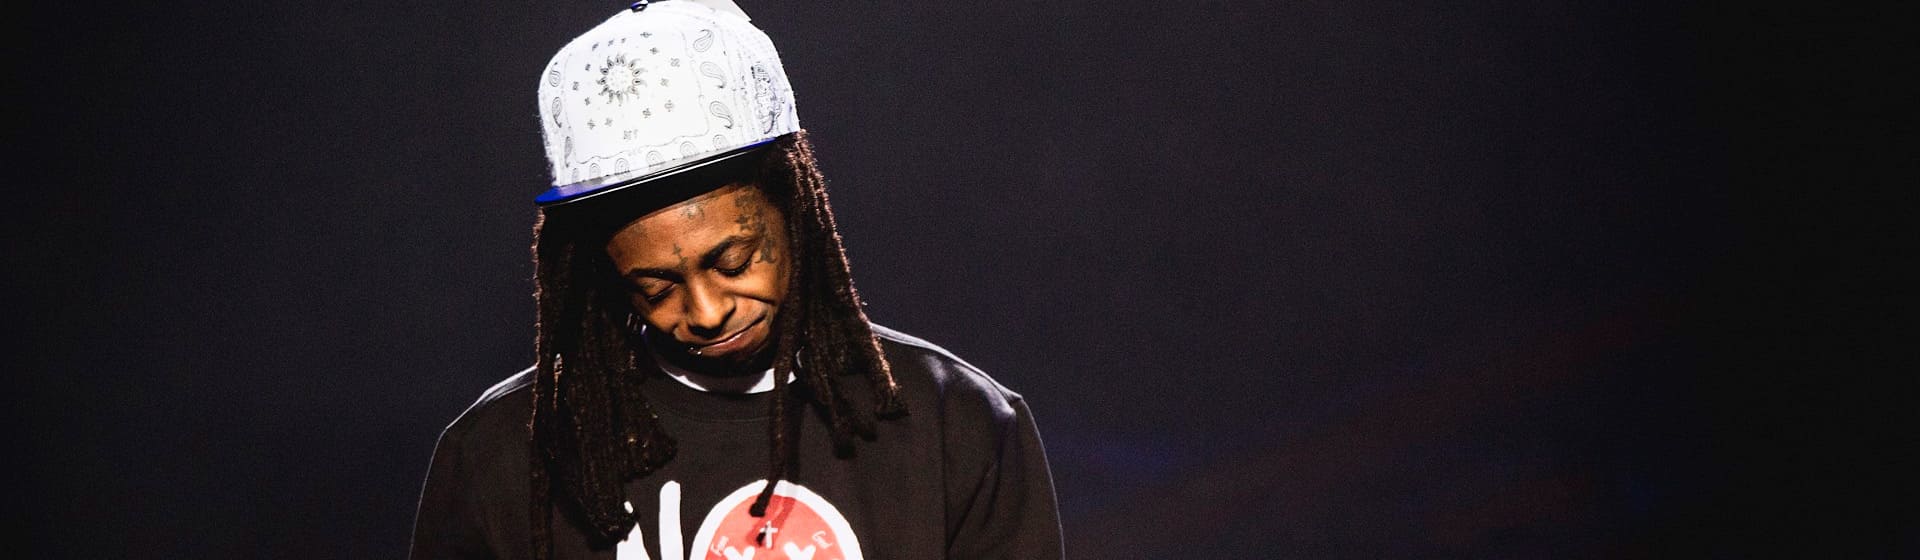 Lil Wayne - Мерч и одежда с атрибутикой